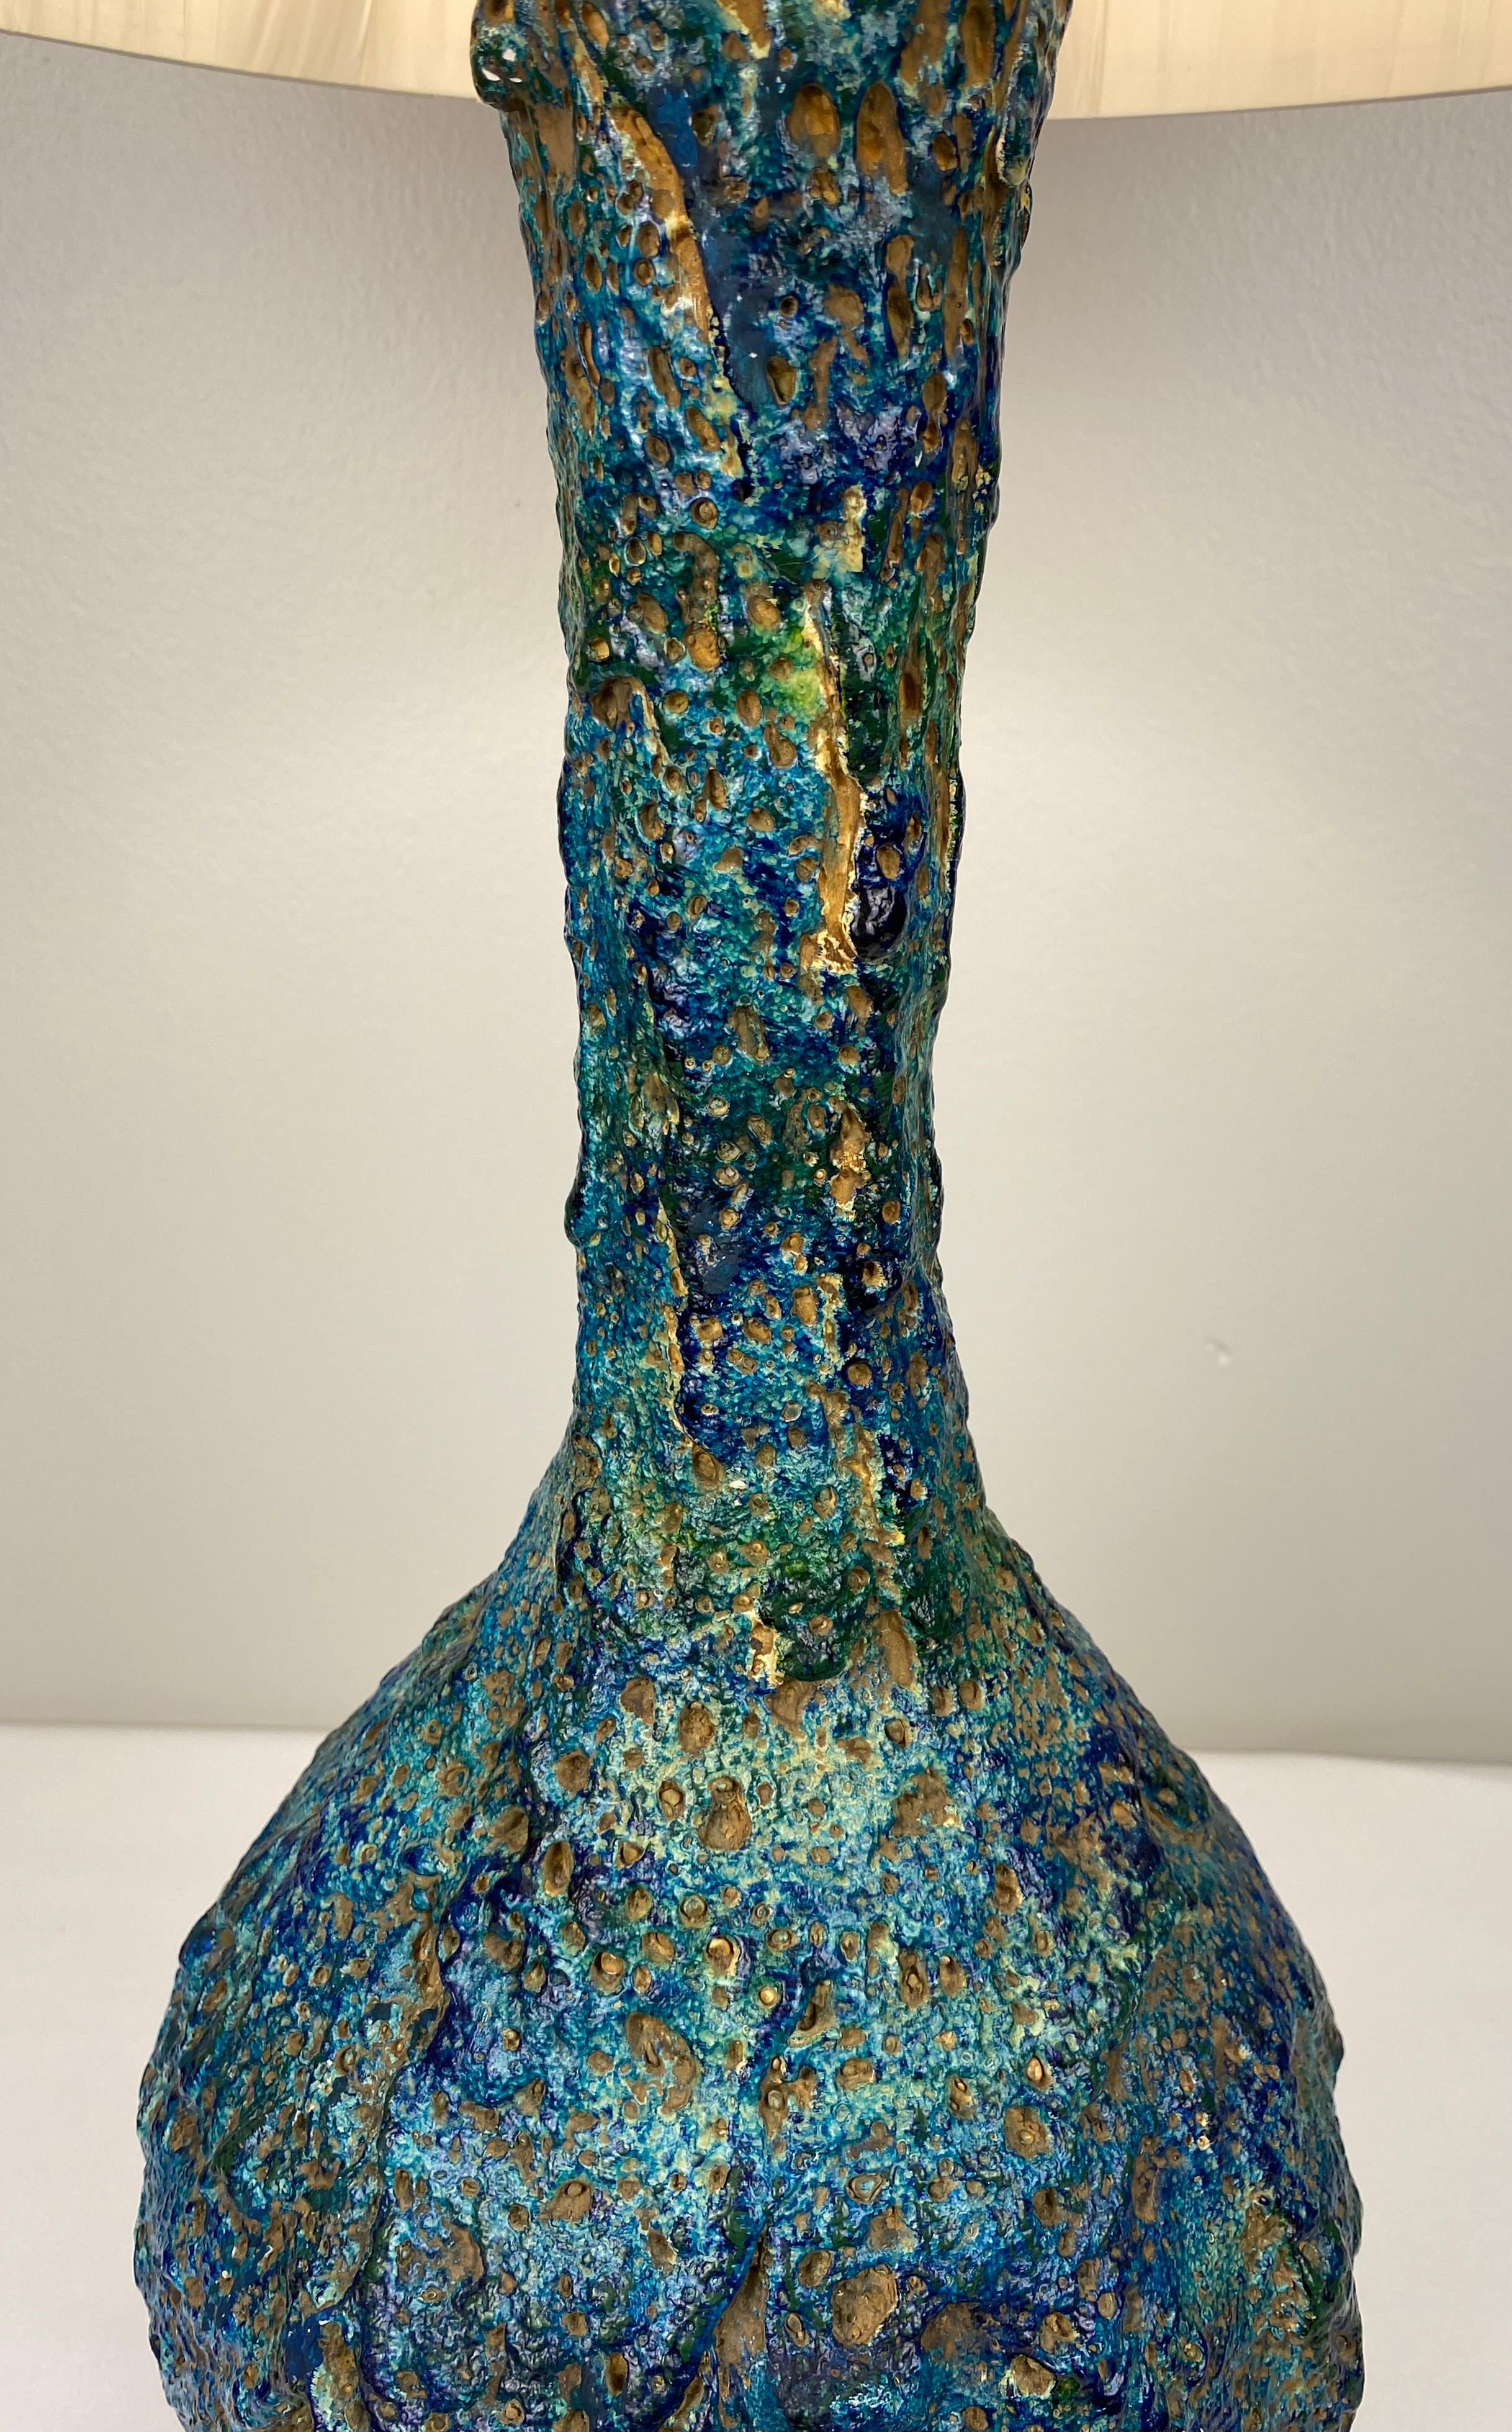 Grande lampe de table en céramique très décorative provenant de France. Très jolie lampe de table en céramique moderne du milieu du siècle avec de belles couleurs bleues et une grande forme. Cette lampe présente un travail de sculpture remarquable. 